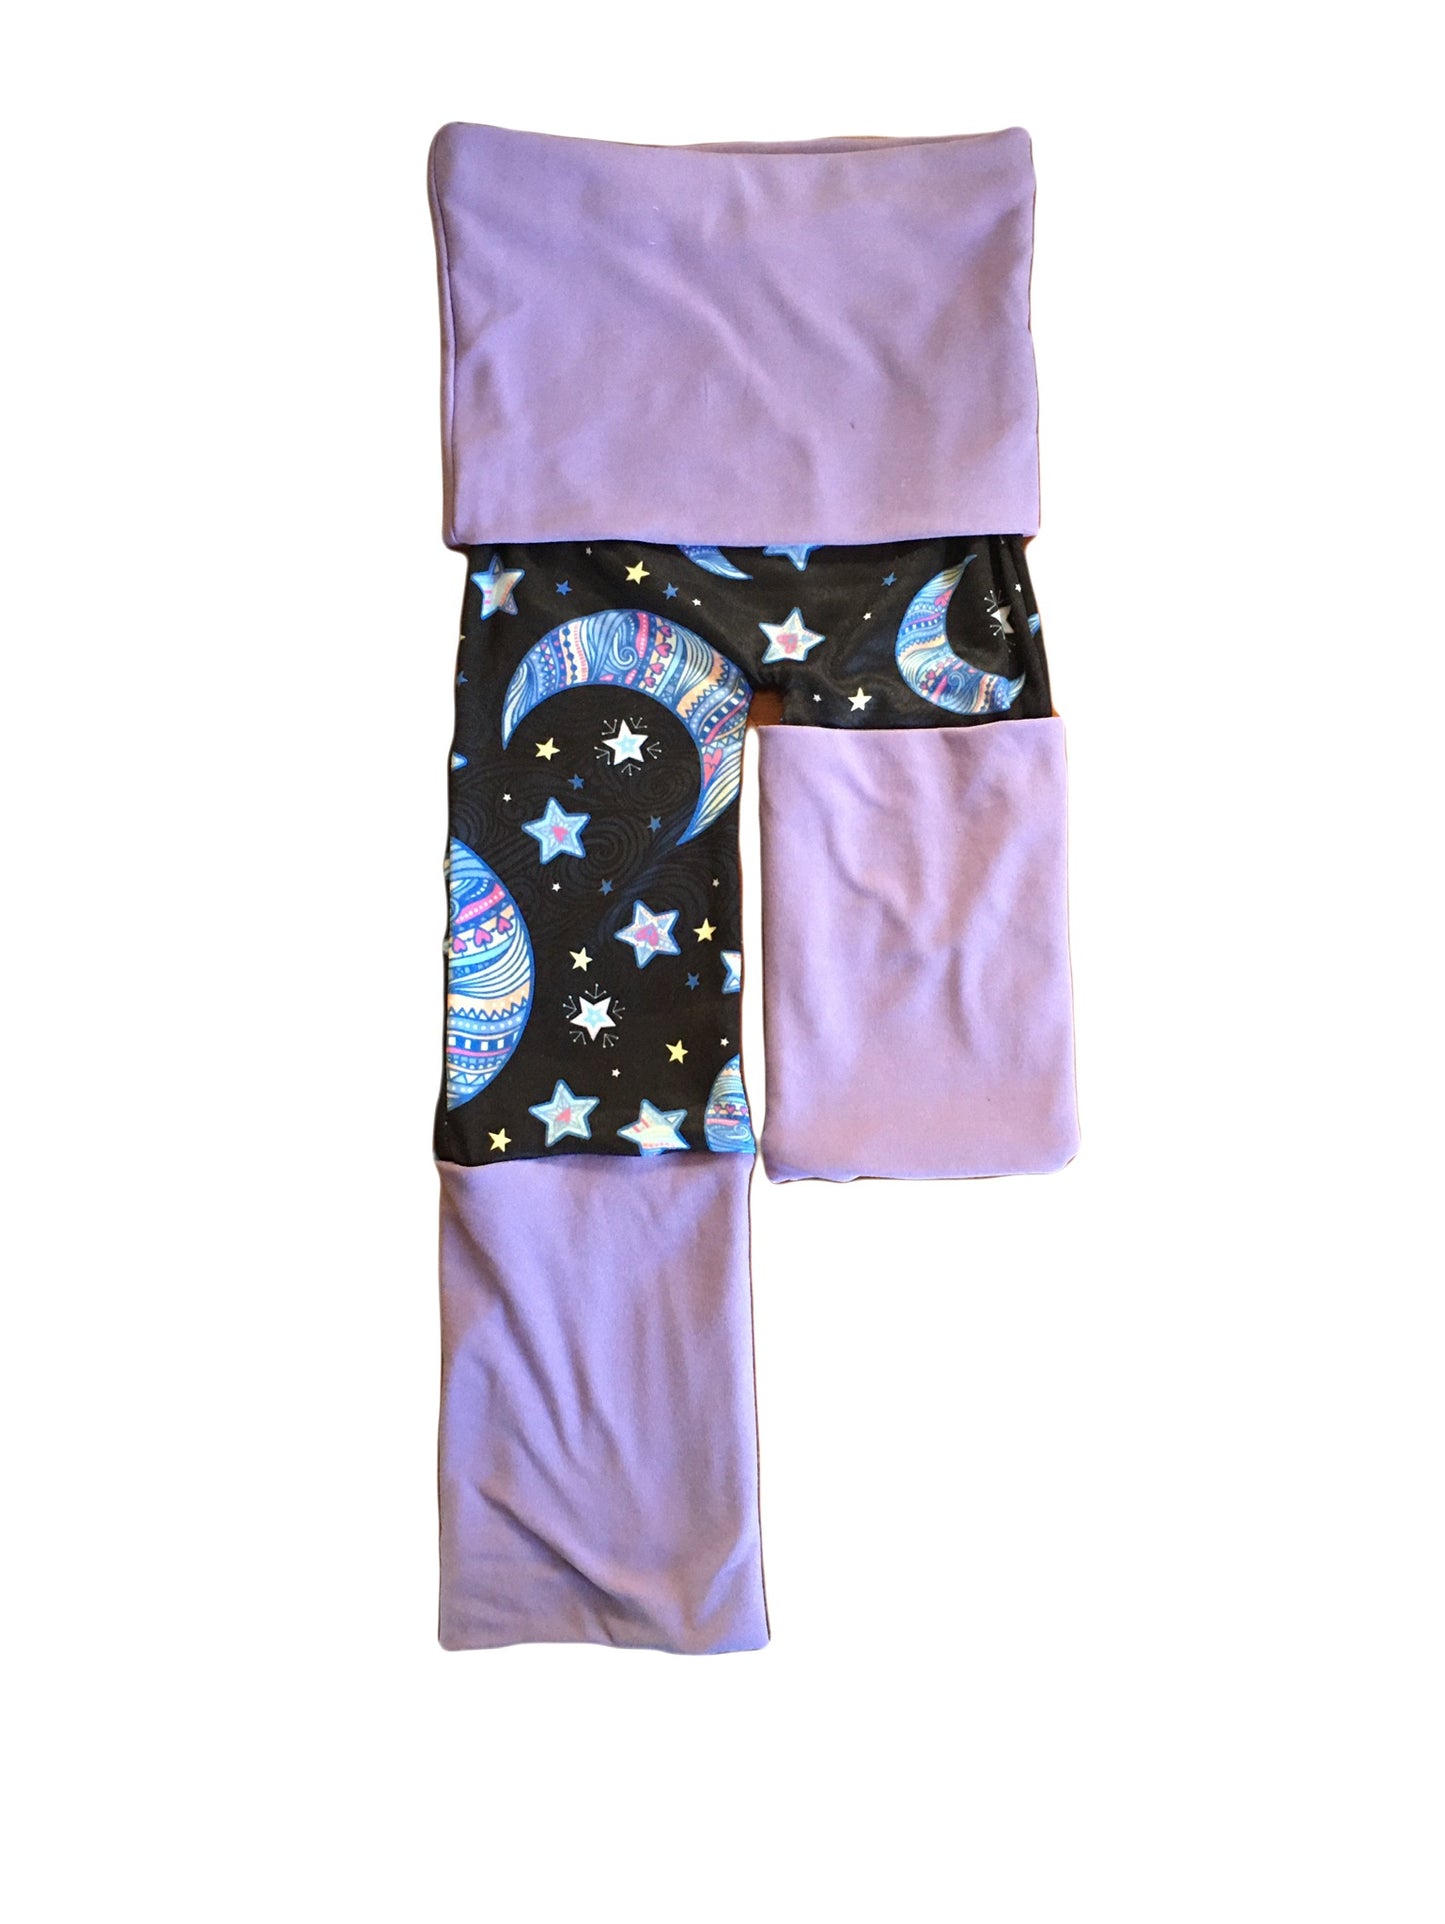 Adjustable Pants - Moon & Stars with Light Purple